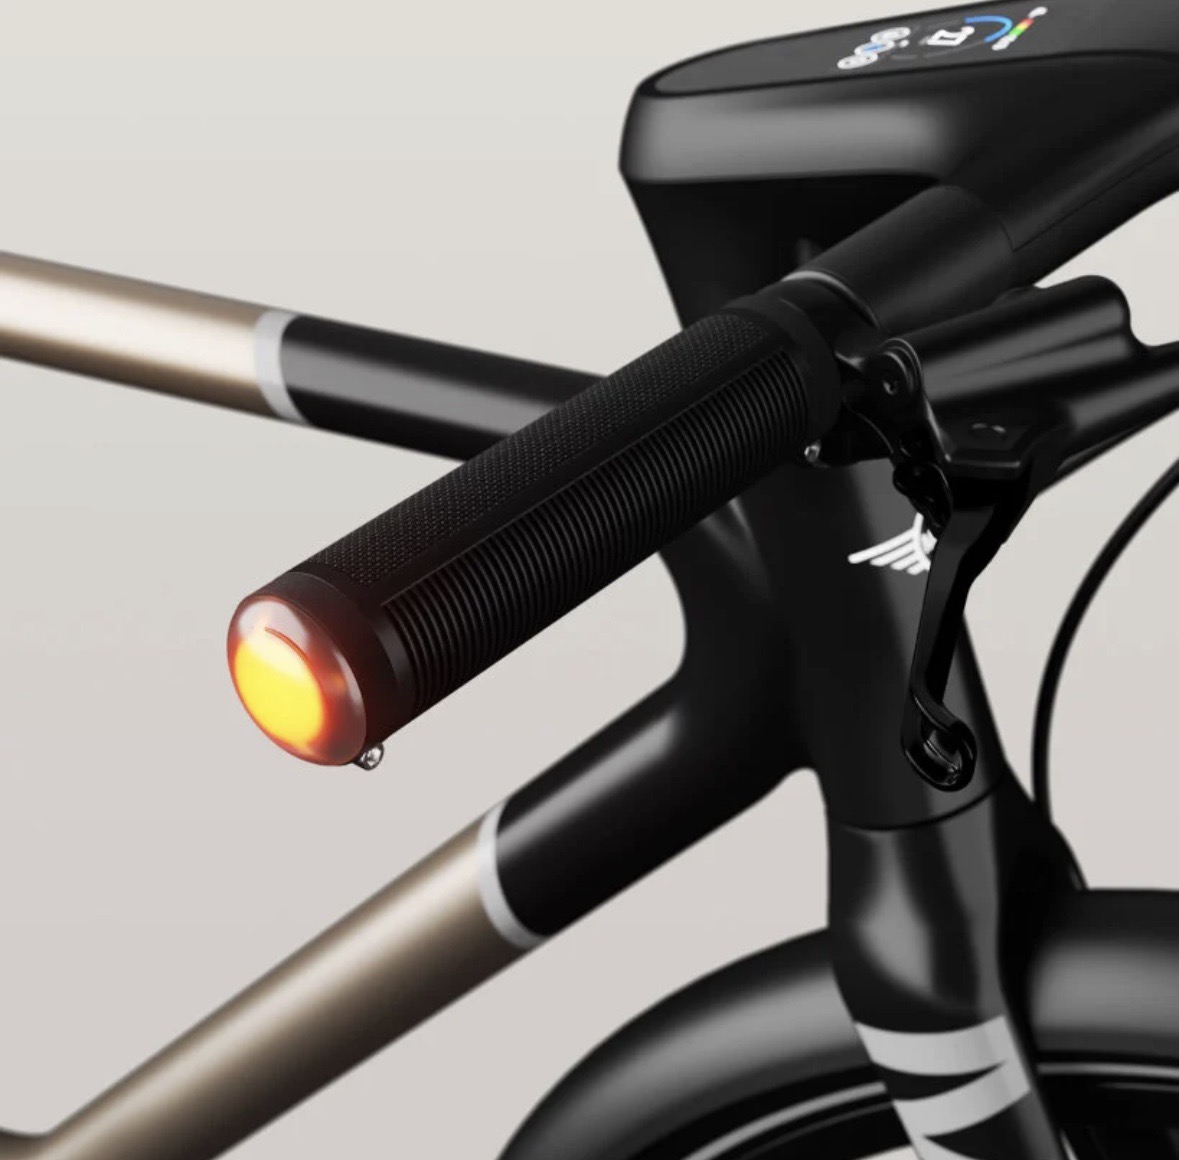 Phía trước xe đạp điện E-Bike có một màn hình cảm ứng 2,4 inch